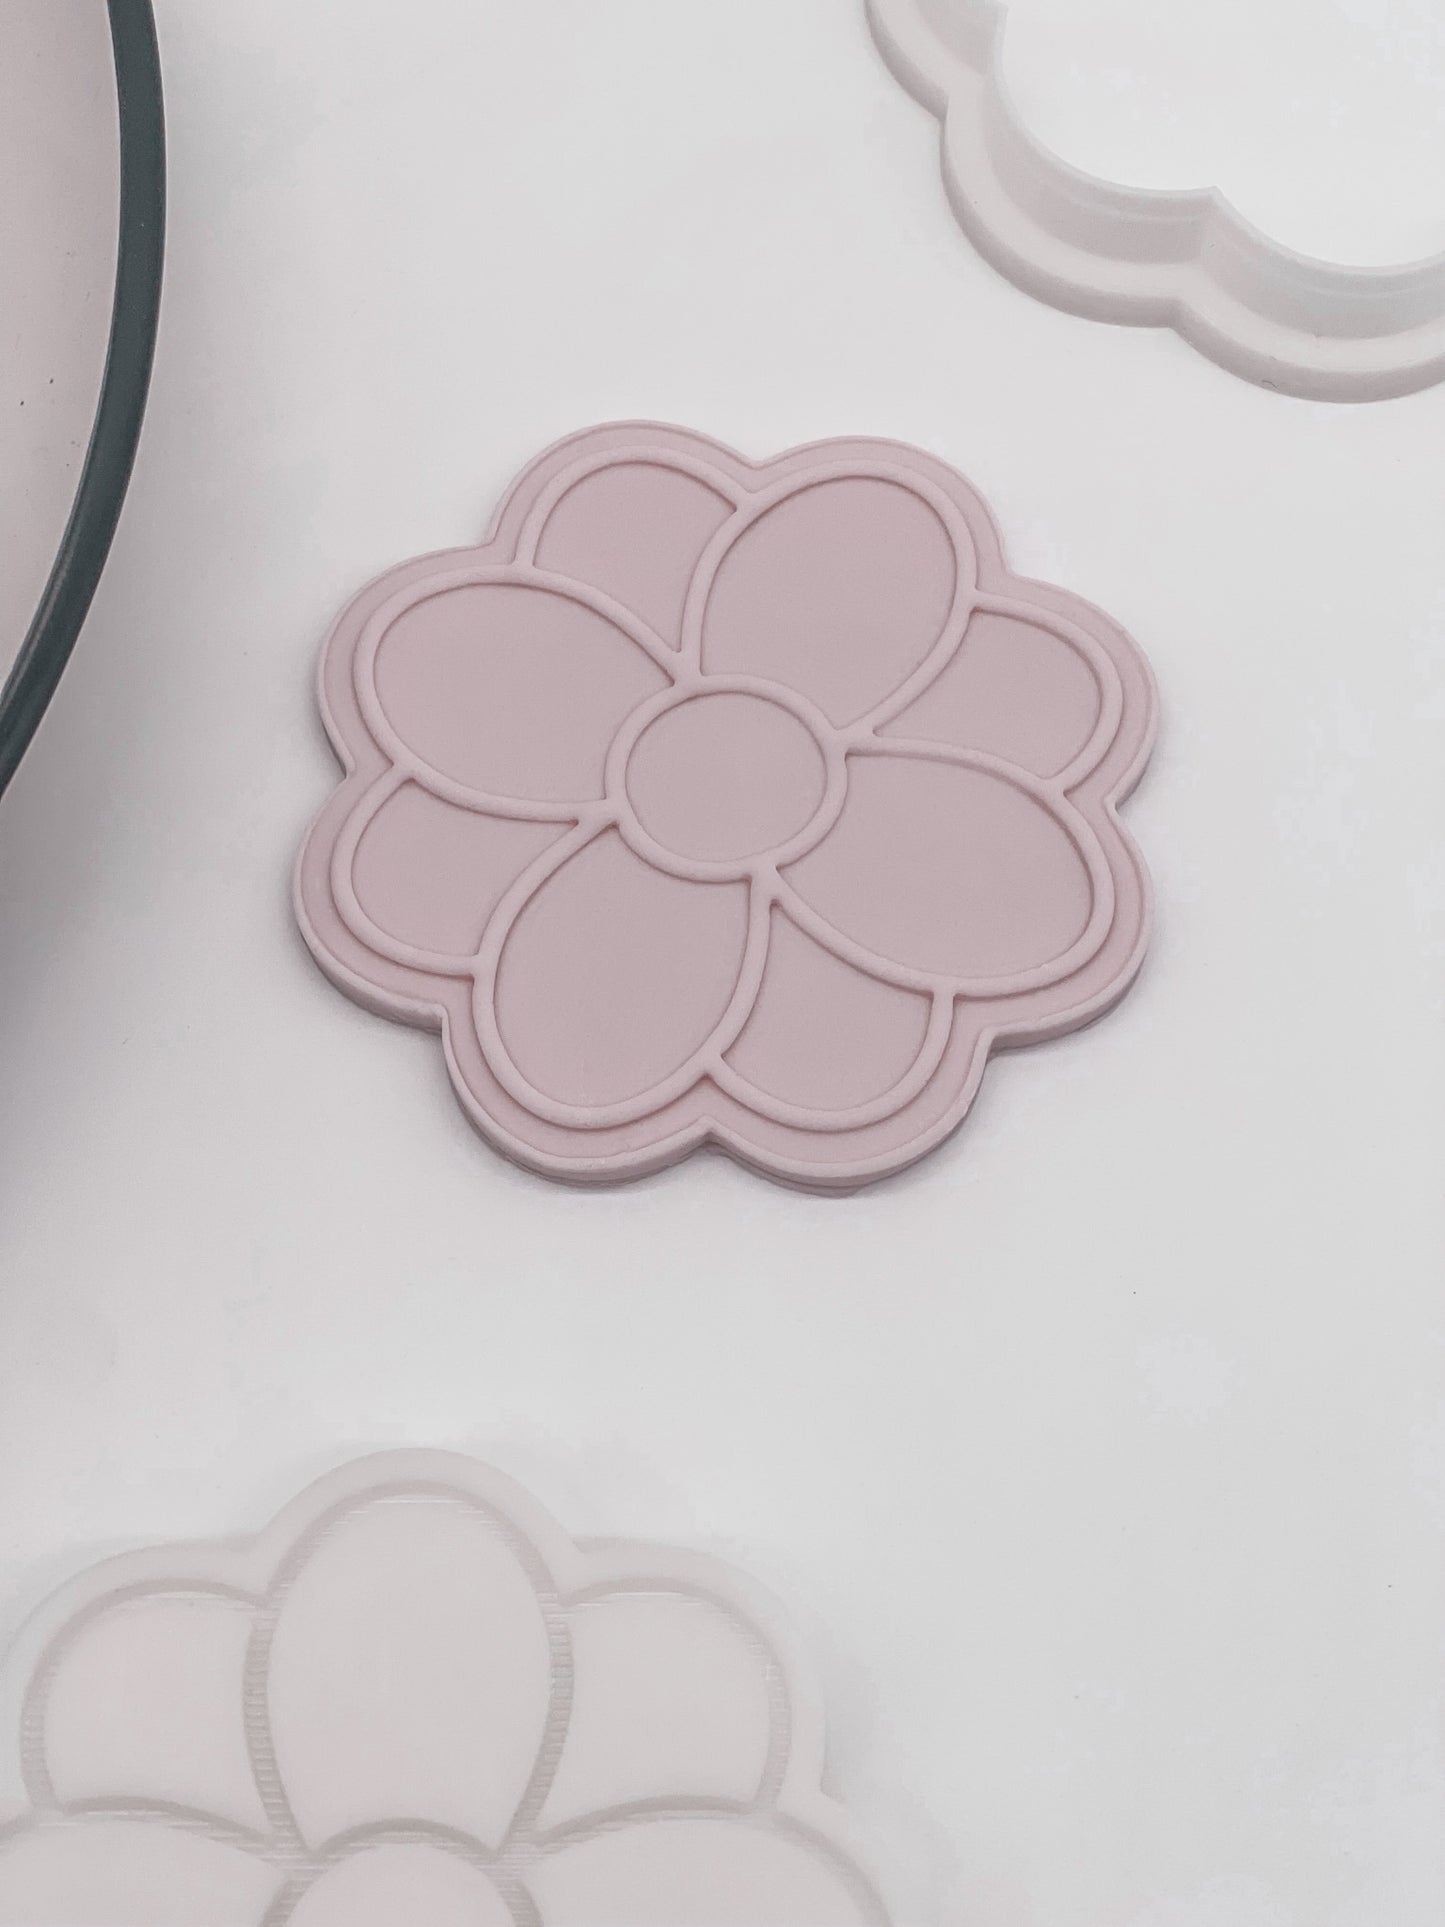 Zara 'Burst' Flower Cookie Stamp and Cutter